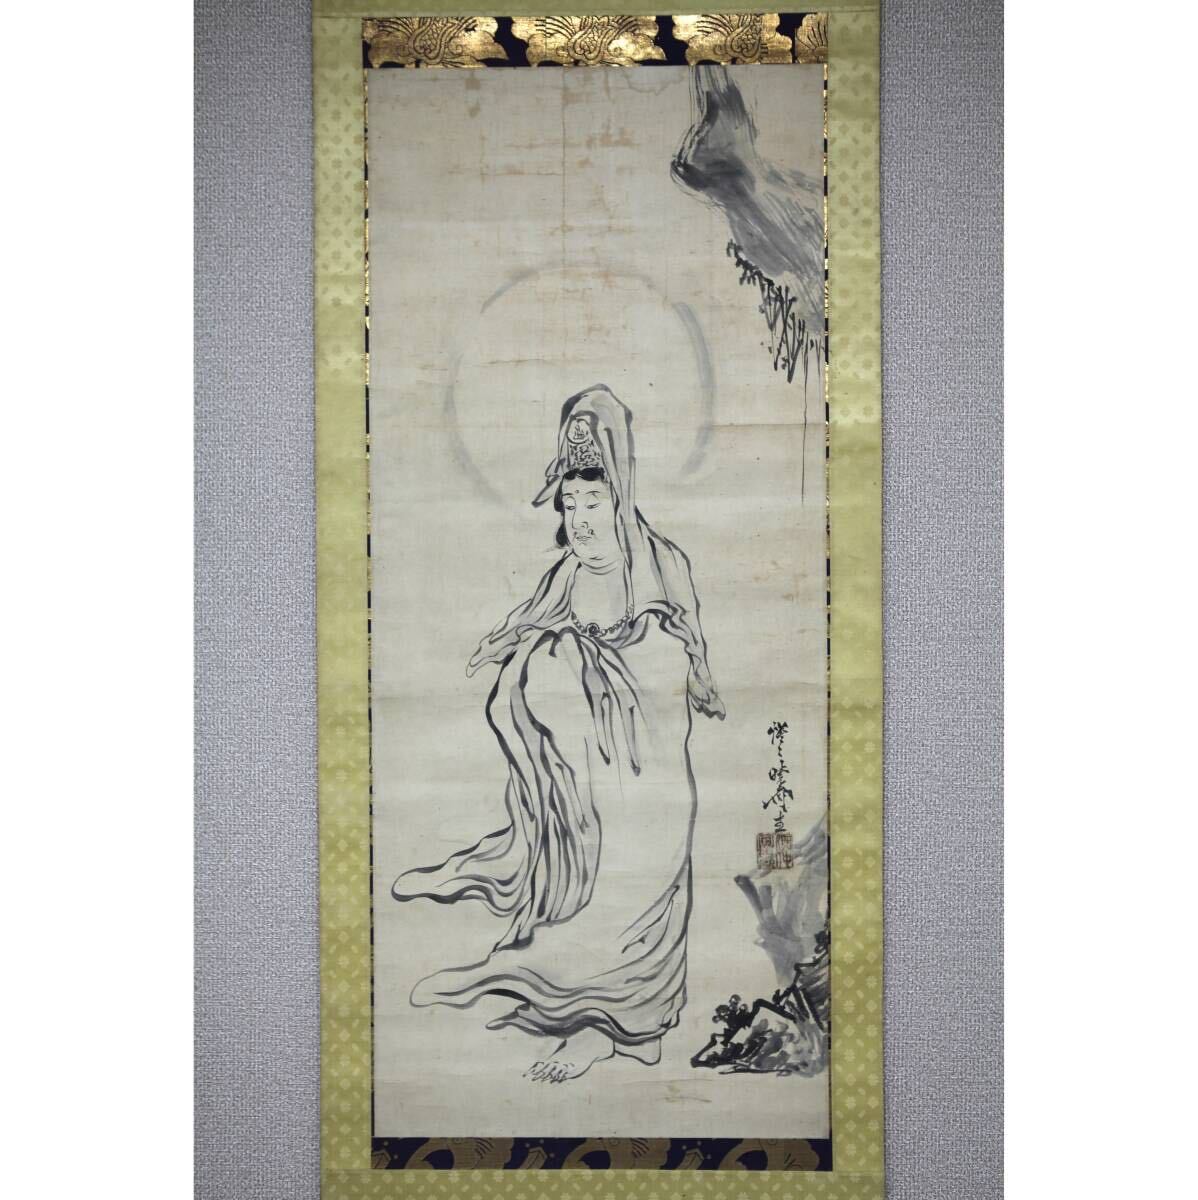 [Authentique] [Moulin à vent] Kawanabe Kyosai Kannon en robe blanche ◎Papier peint à la main ◎Fin de la période Edo-Meiji, Originaire d'Ibaraki, Seiseien, Gaki, Artiste Ukiyo-e, Peinture, Peinture japonaise, personne, Bodhisattva